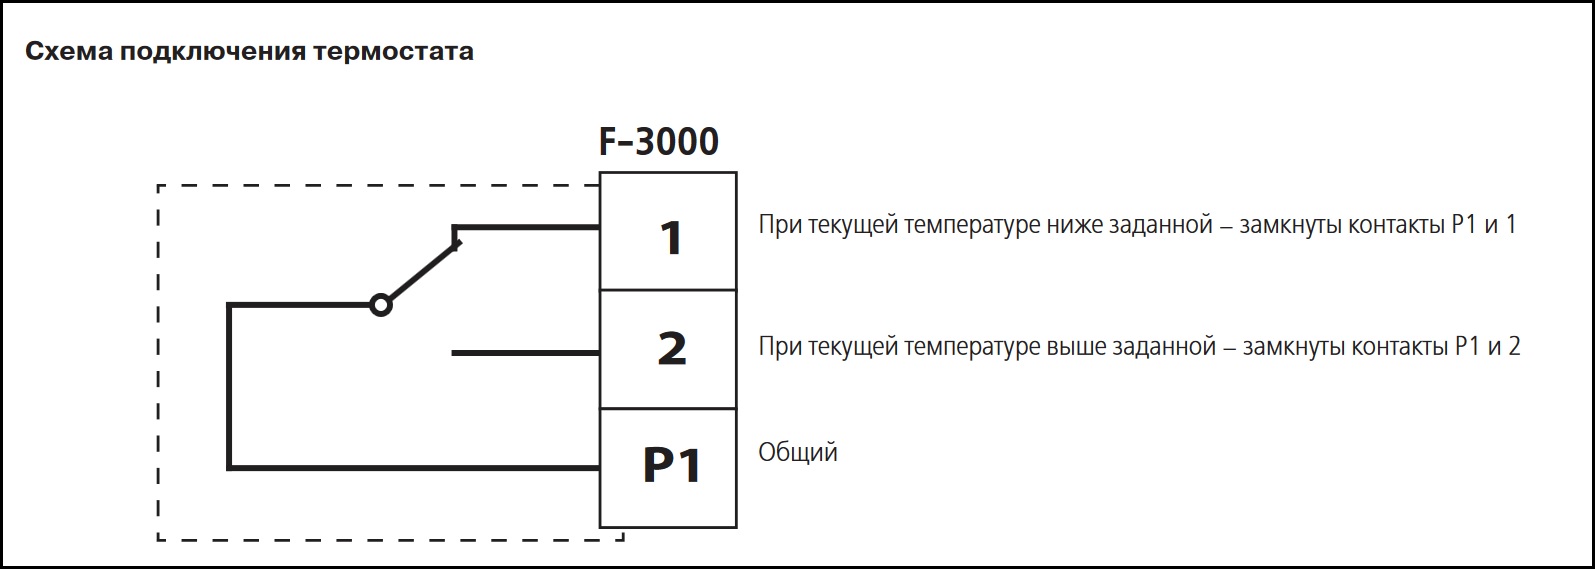 Схема подключения термостата ВЕНТС F-3000